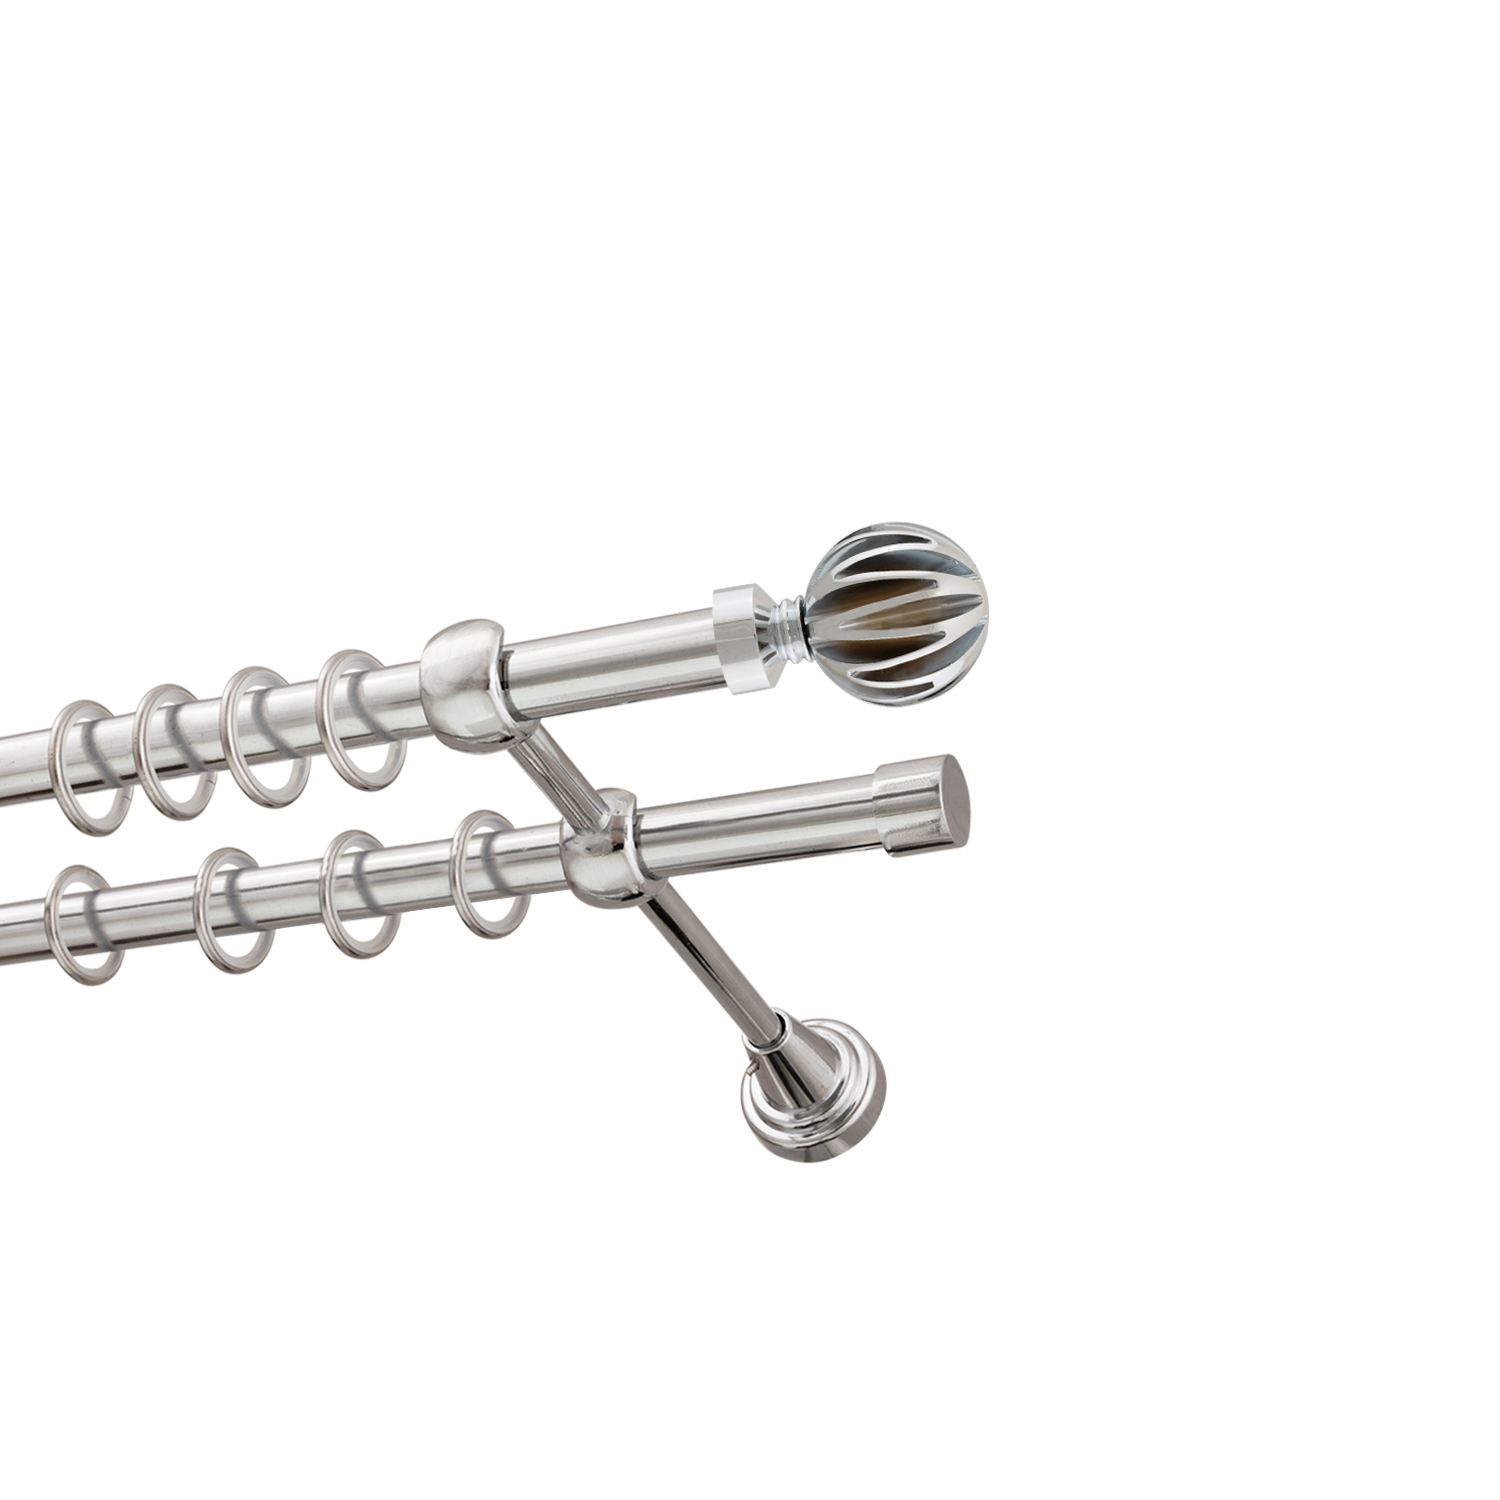 Металлический карниз для штор Шафран, двухрядный 16/16 мм, серебро, гладкая штанга, длина 200 см - фото Wikidecor.ru